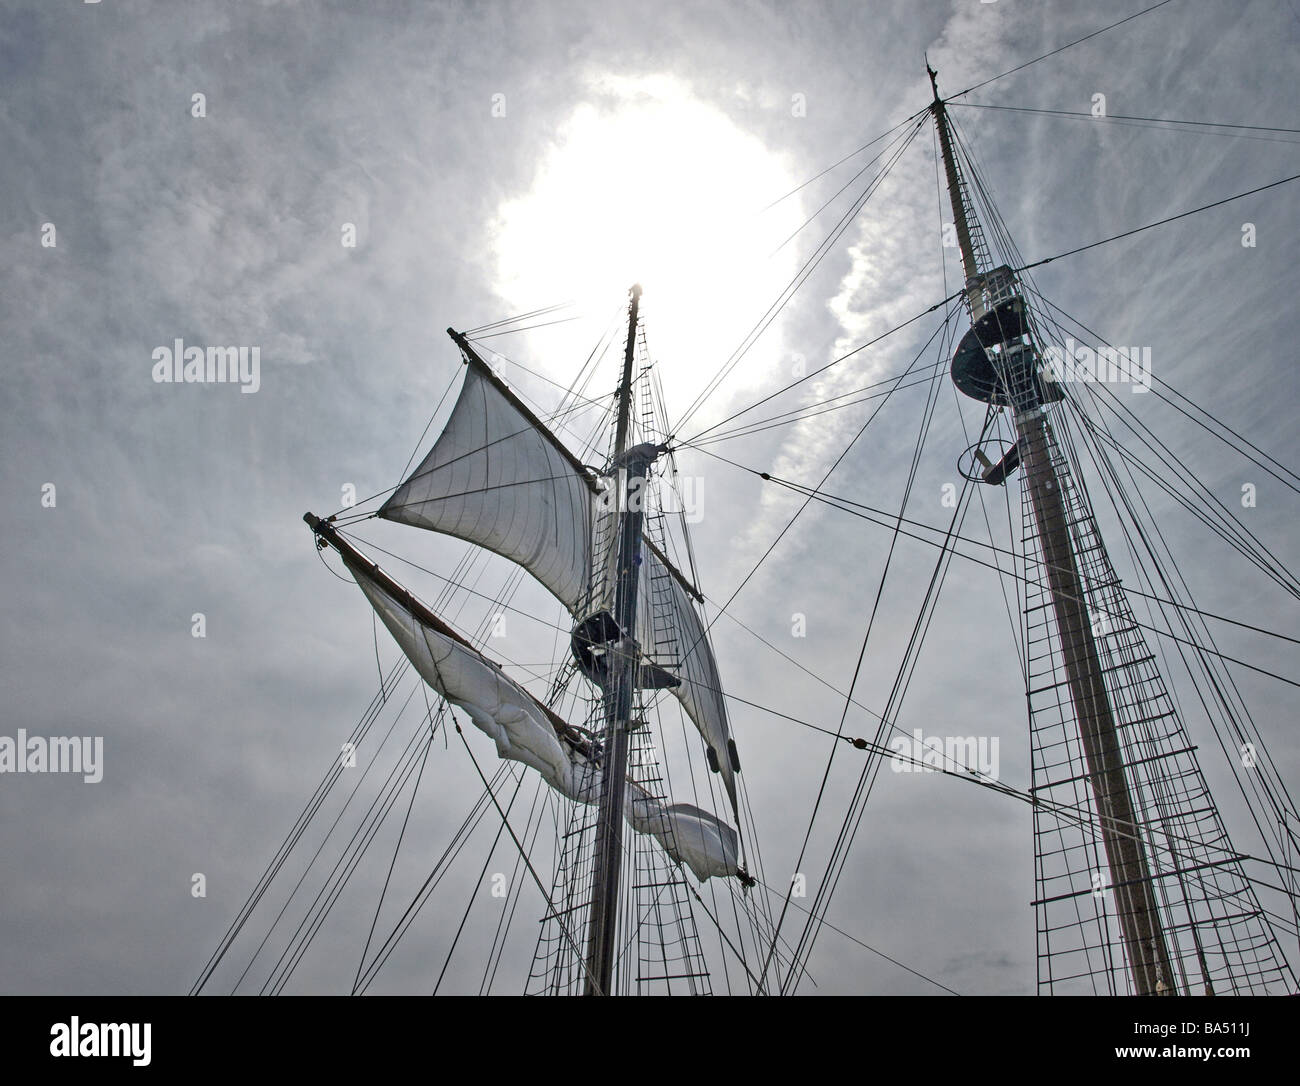 Tall-navires tall-ships deux des trois mâts à vers le haut avec un soleil éclatant et les nuages gris, la voile et les échelles des lignes de cordes déployé Banque D'Images